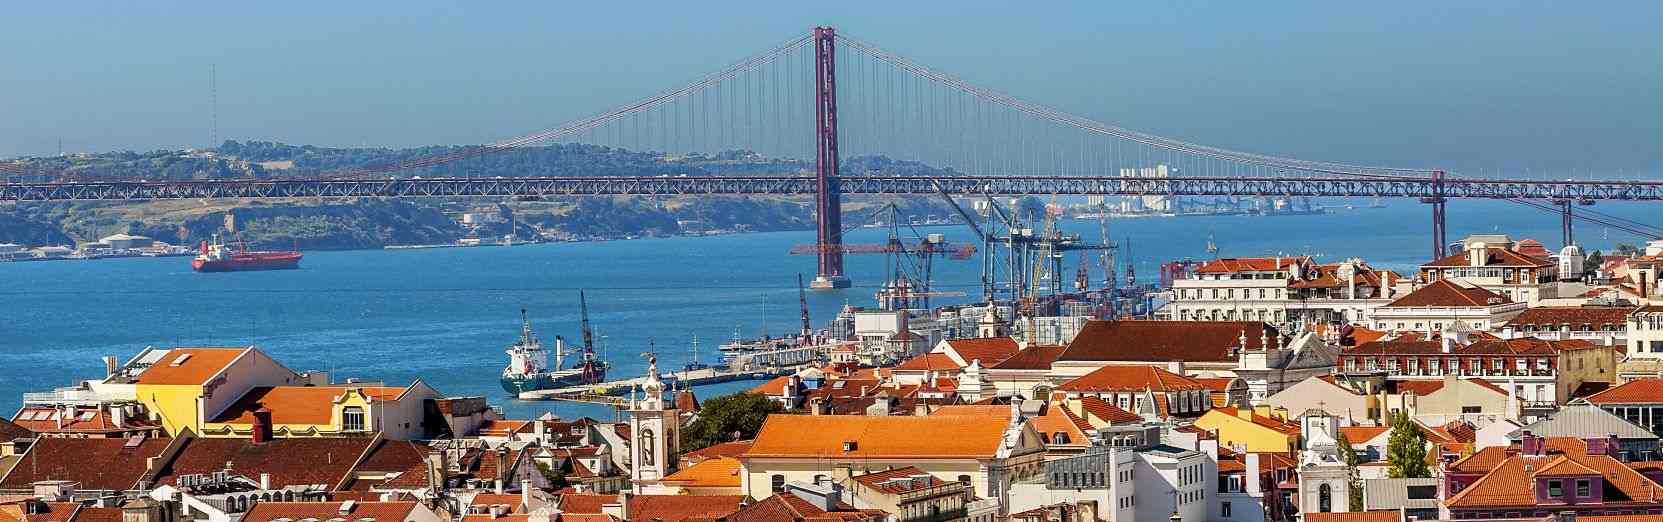 Urlaub in Lissabon